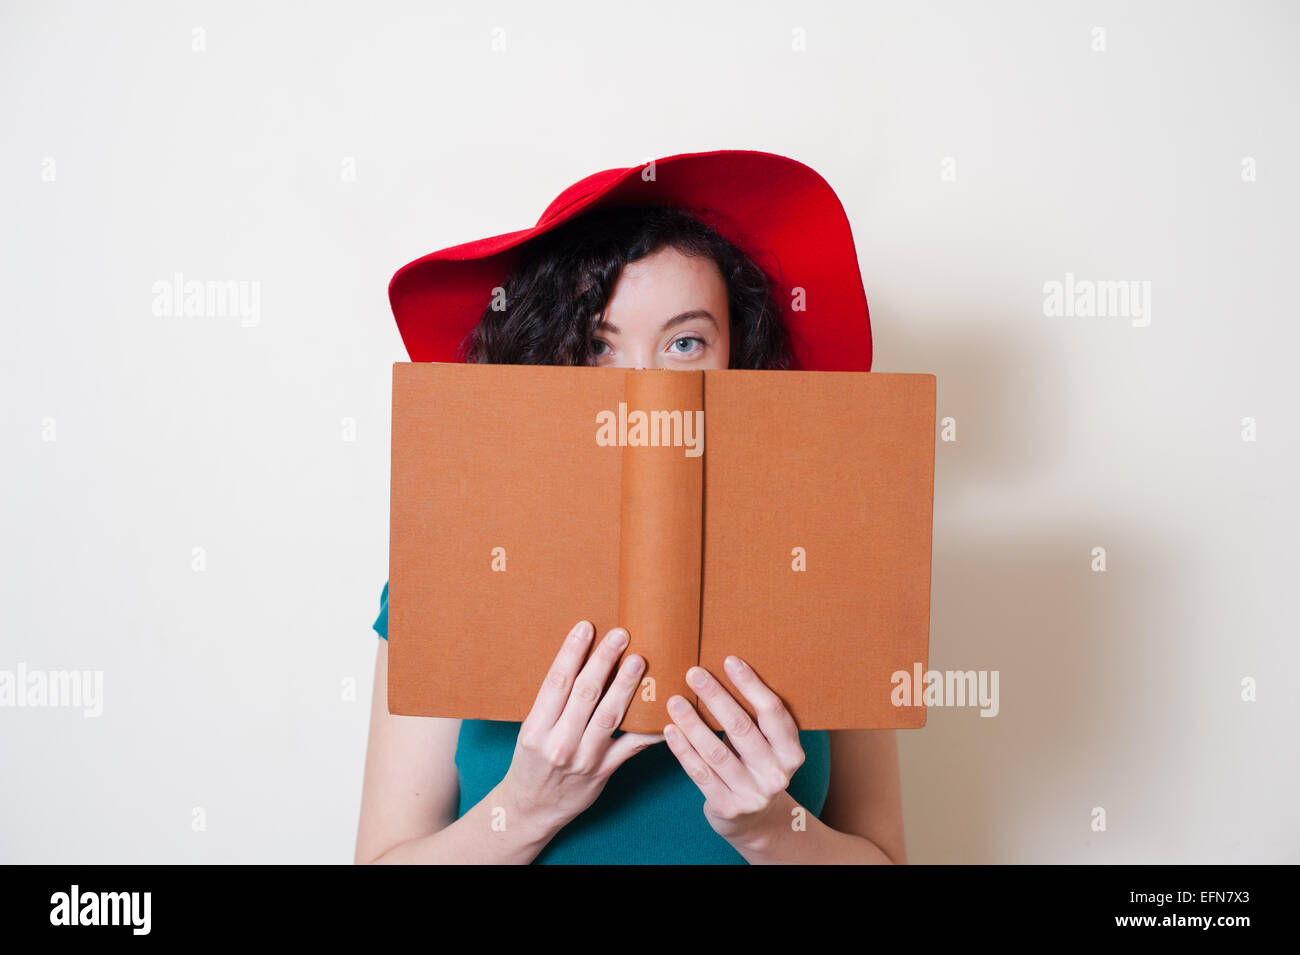 Jeune femme avec red hat holding book partiellement couvert visage semble derrière sur fond blanc Banque D'Images